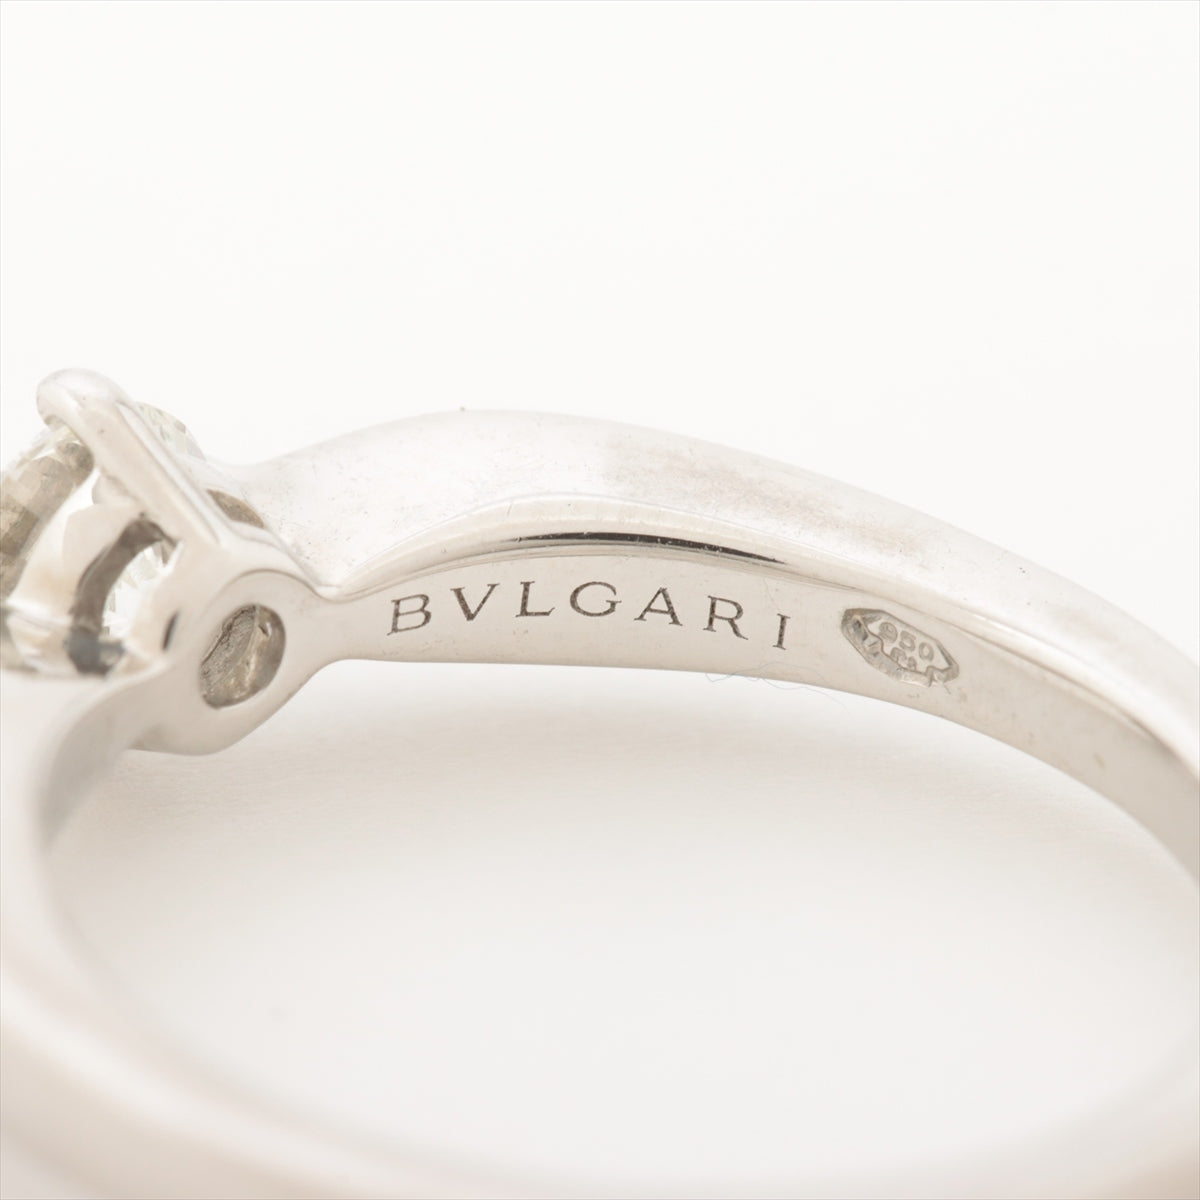 Bvlgari Dedicata A Venezia diamond rings Pt950 3.6g GIA No.2126734941